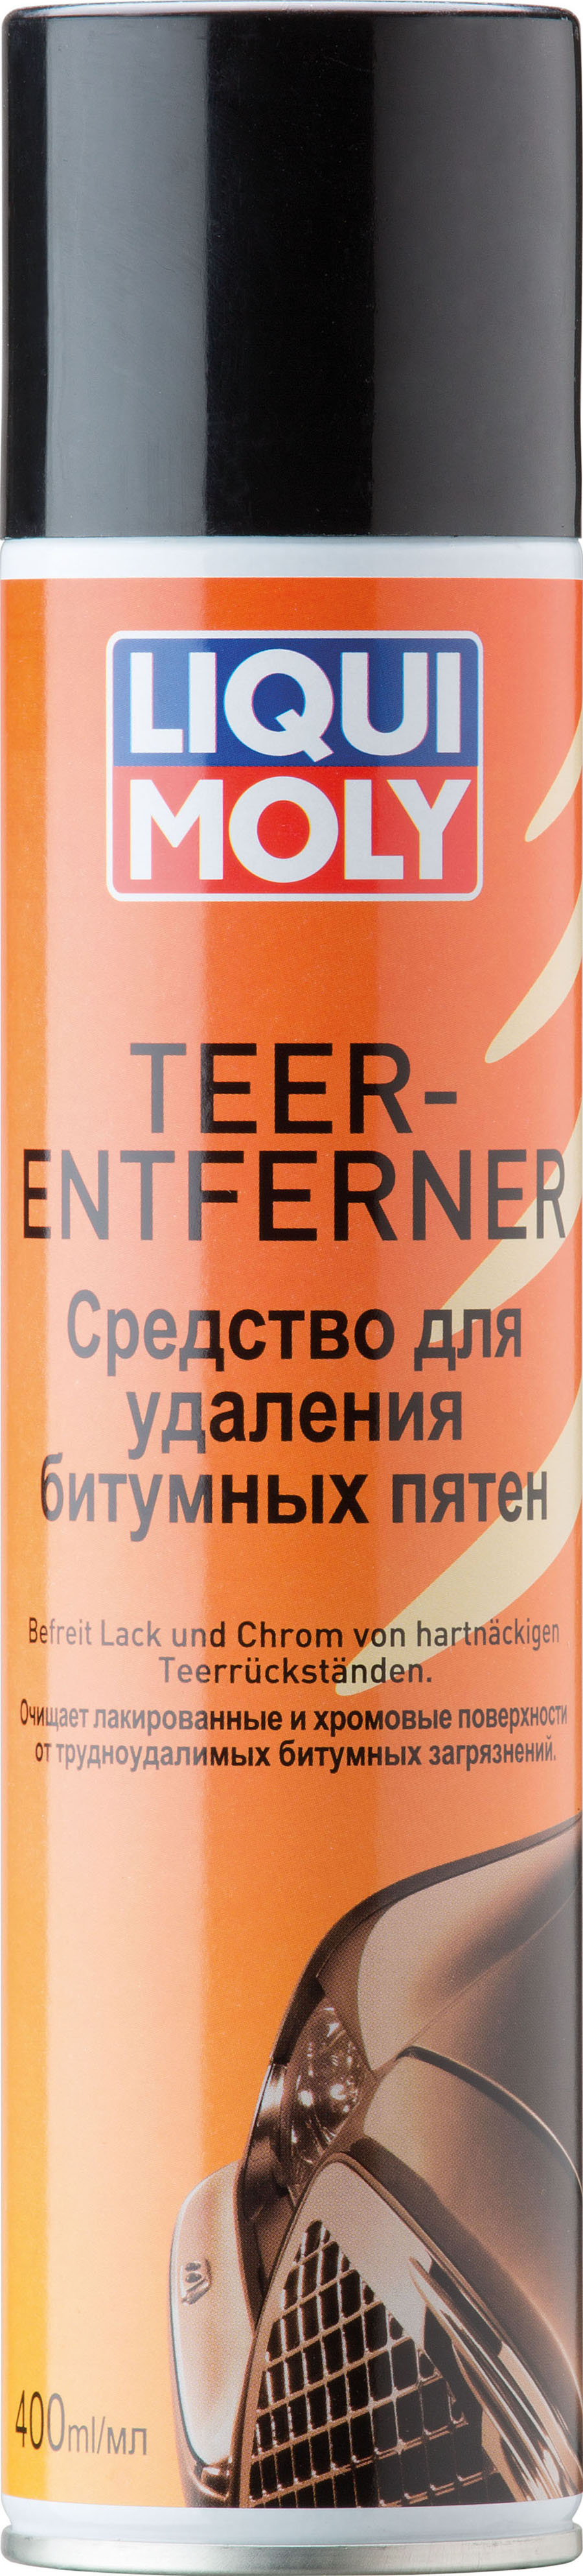 Средство для удаления битумных пятен LIQUI MOLY Teer-Entferner (0,4 литра)